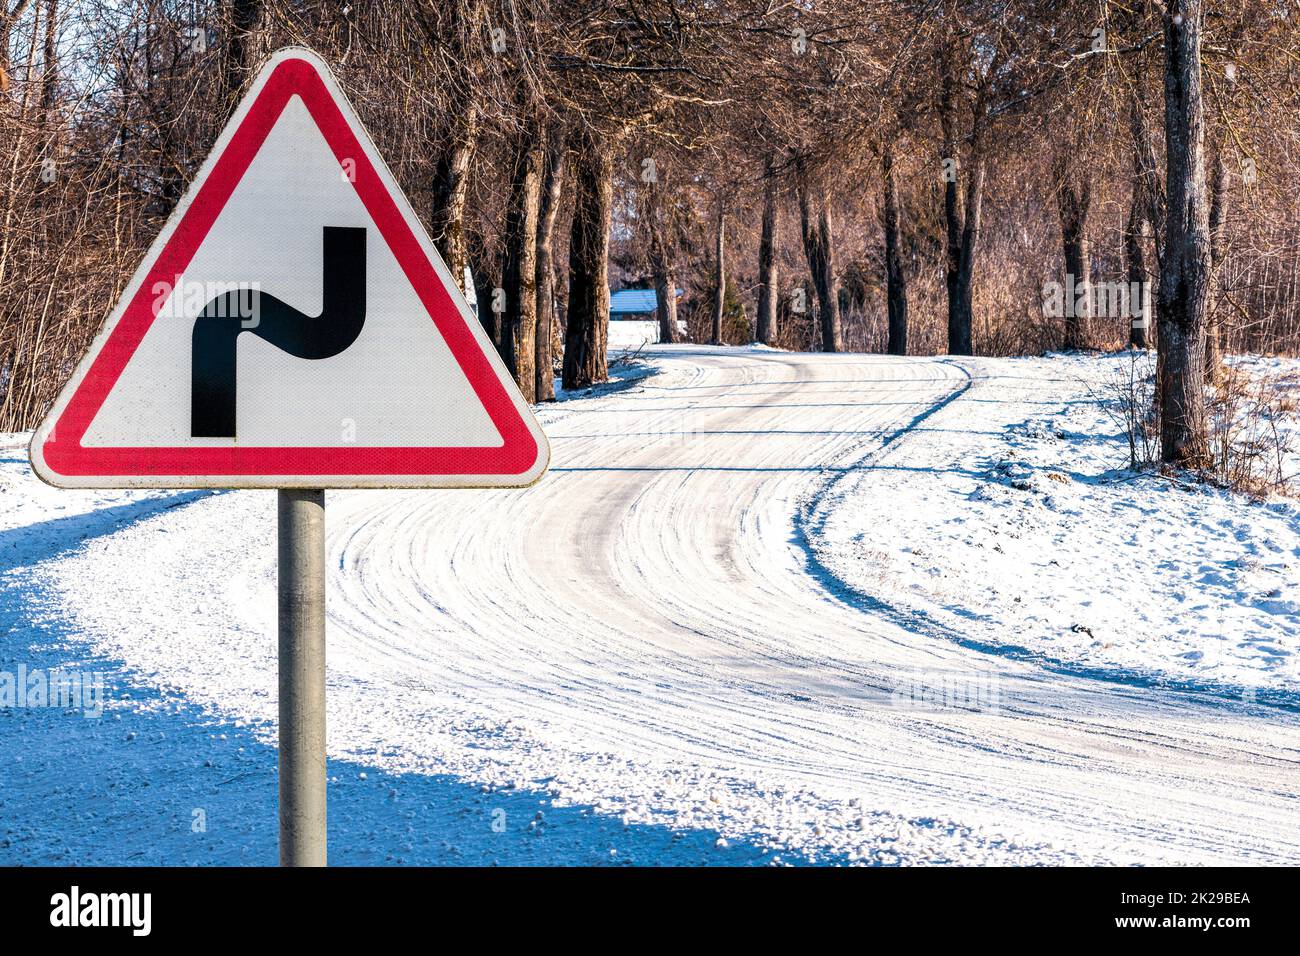 Señal de carretera en una carretera cubierta de nieve Foto de stock